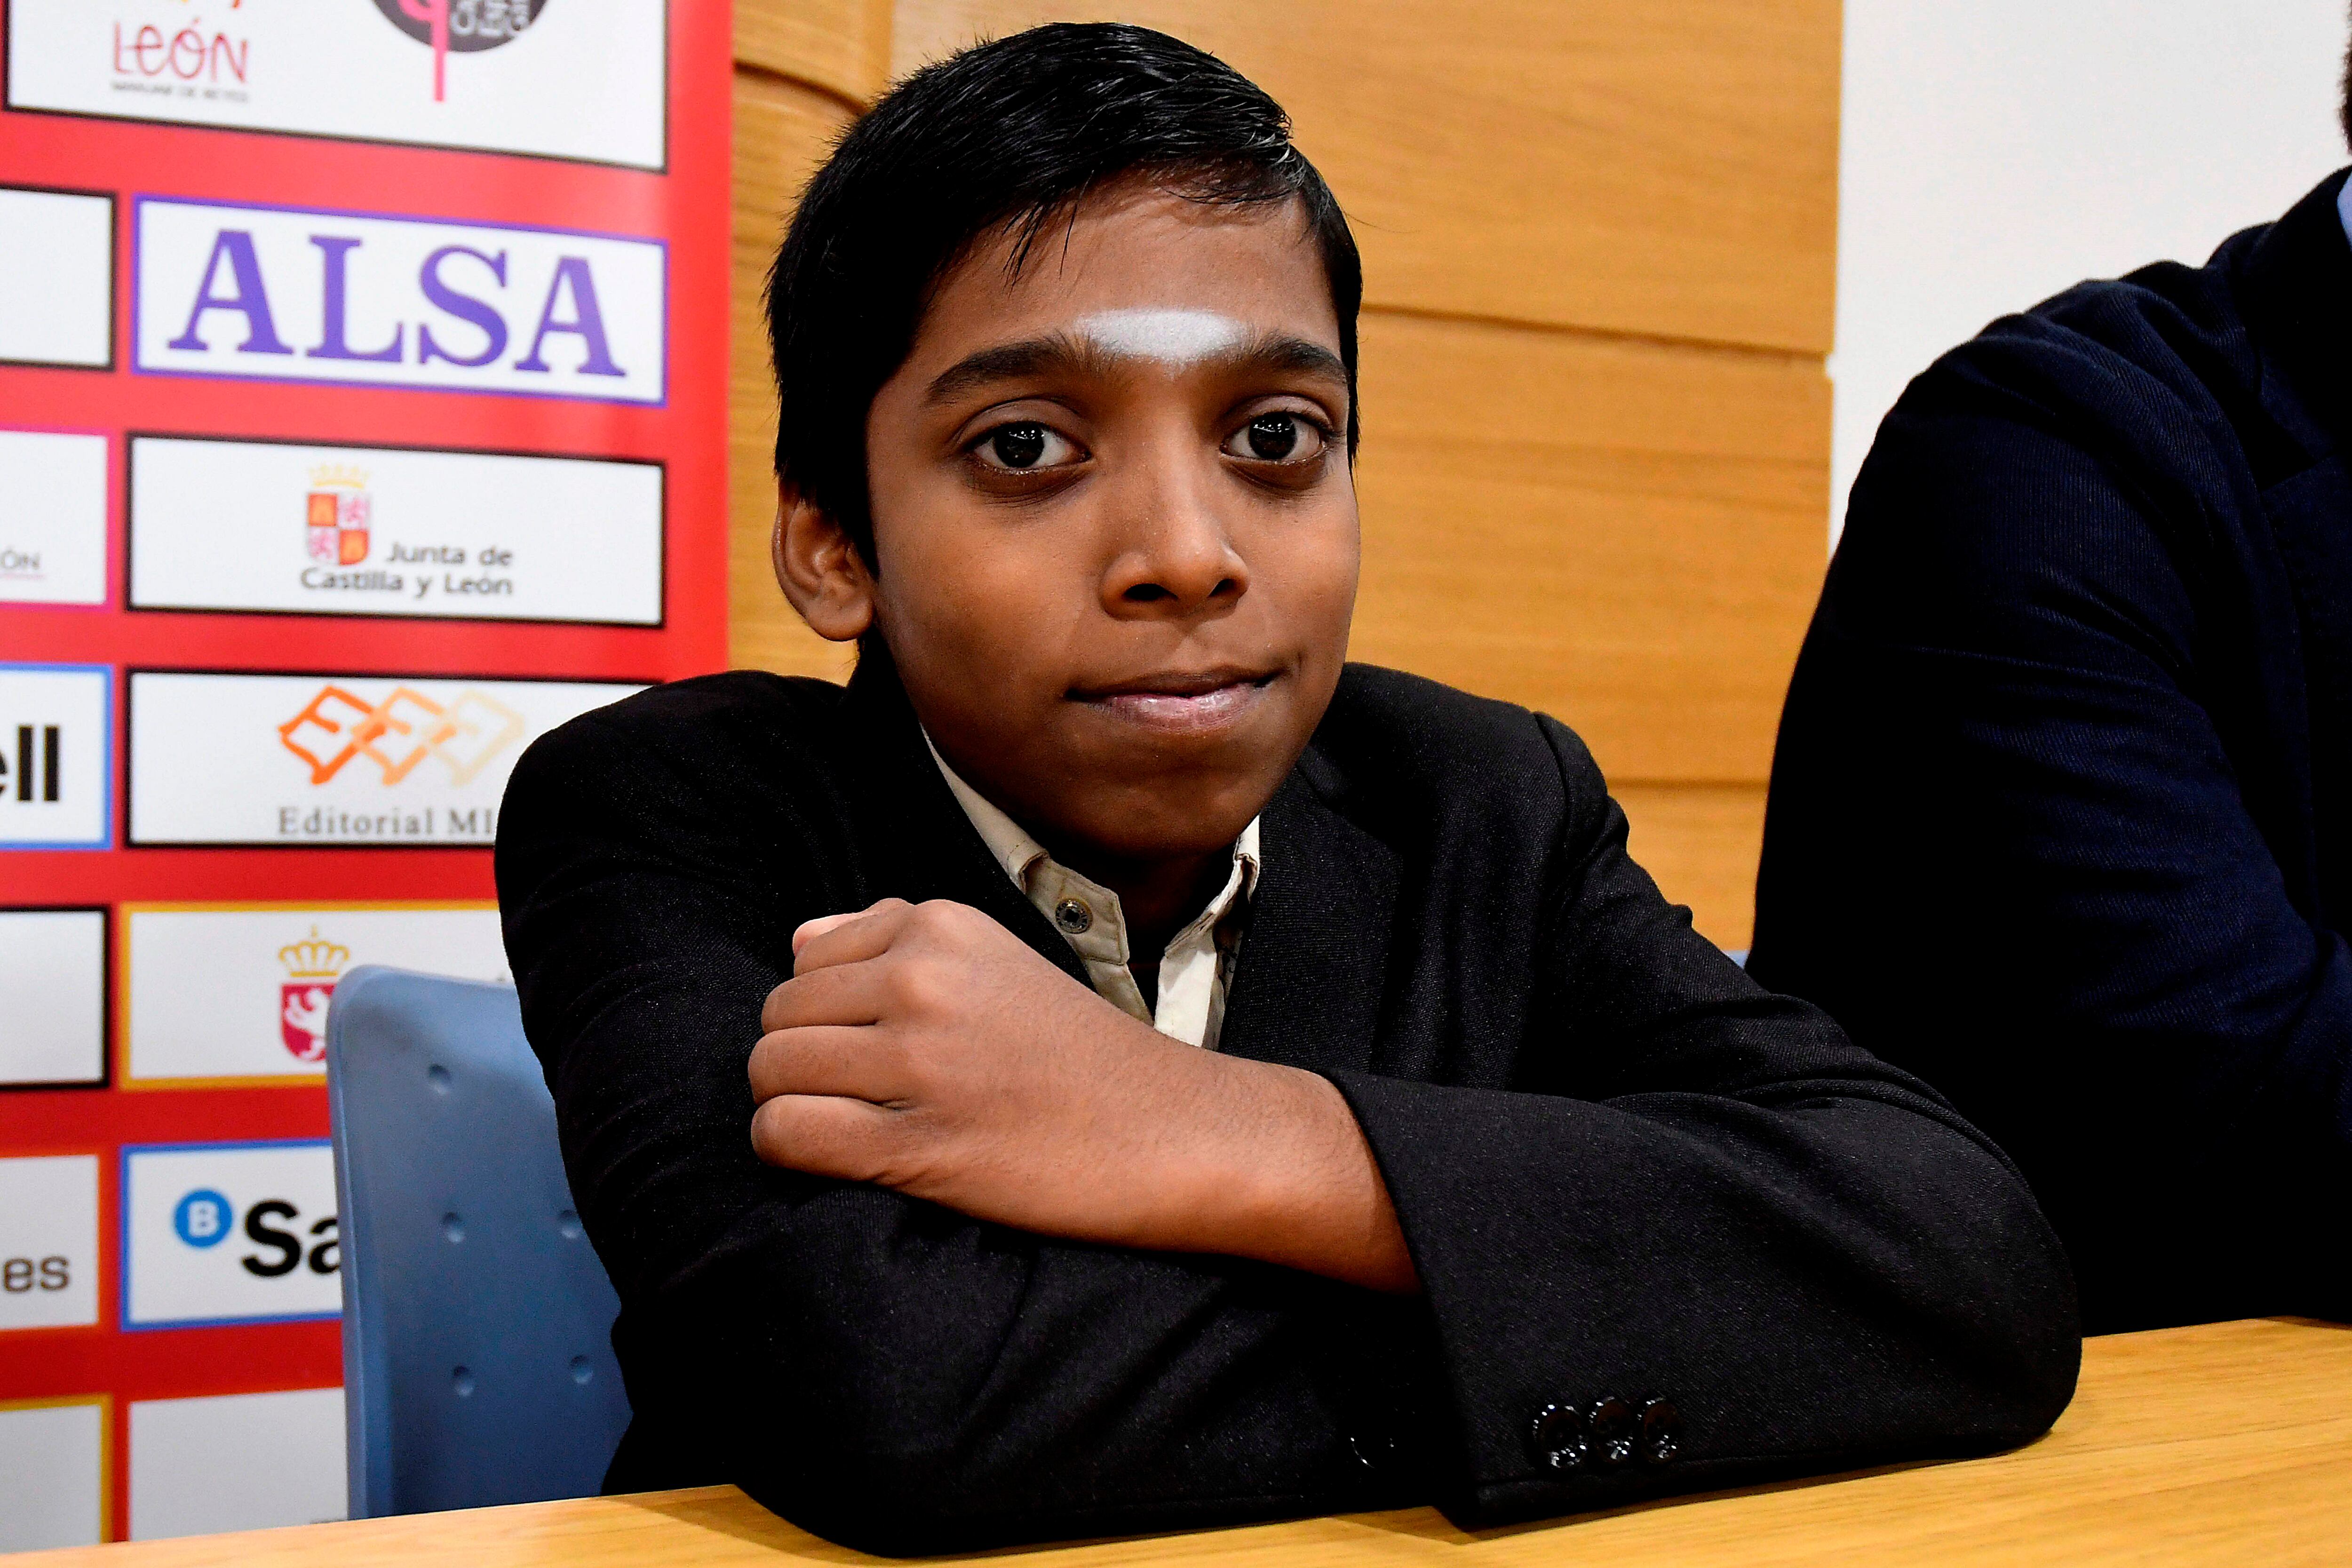 El joven jugador de ajedrez, el indio Rameshbabu Praggnanandhaa conocido como "Prag" (Foto: EFE)